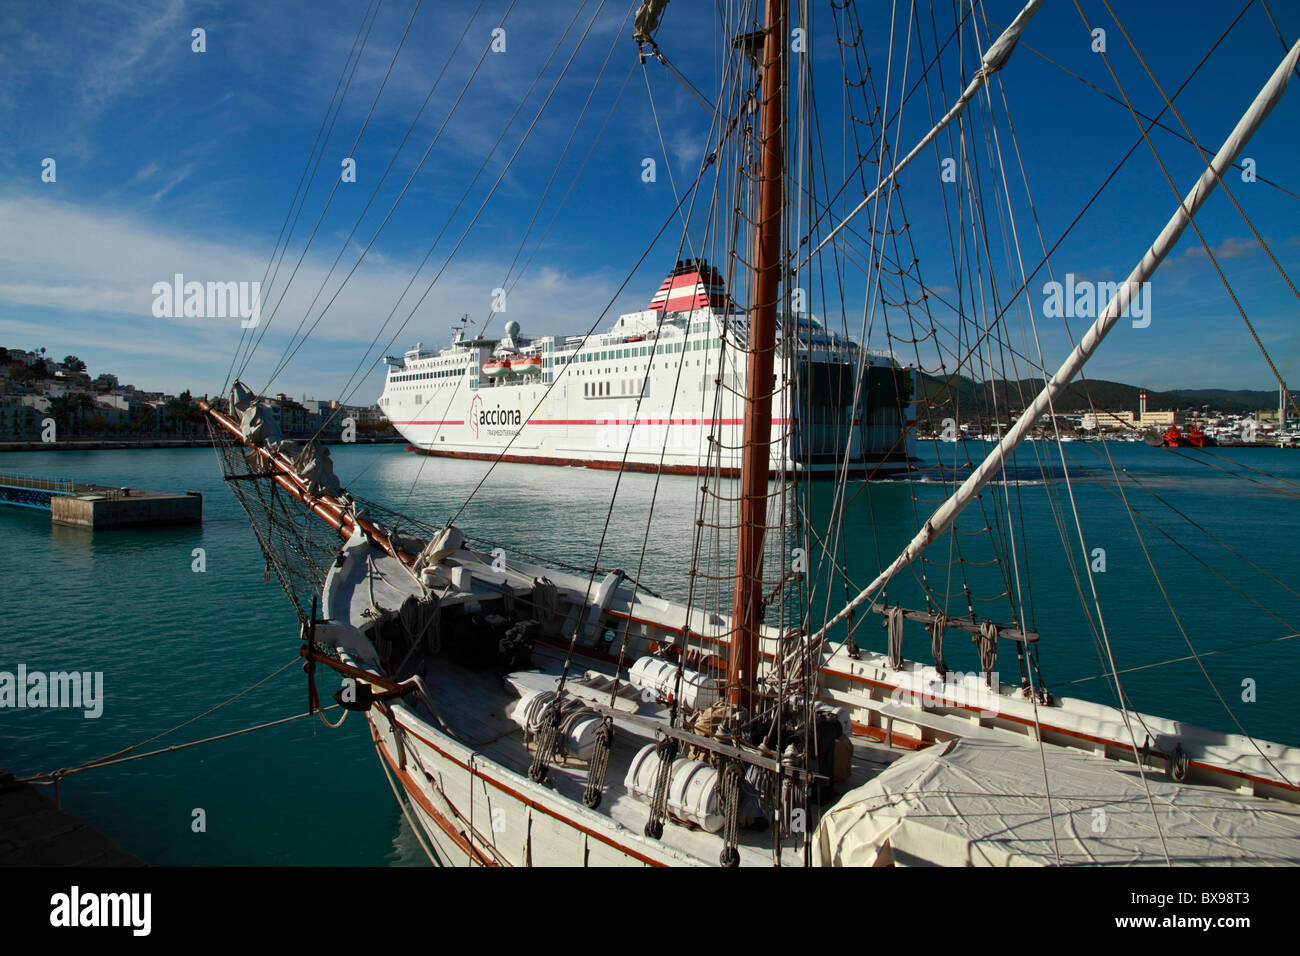 Moored schooner, liner in the background Stock Photo